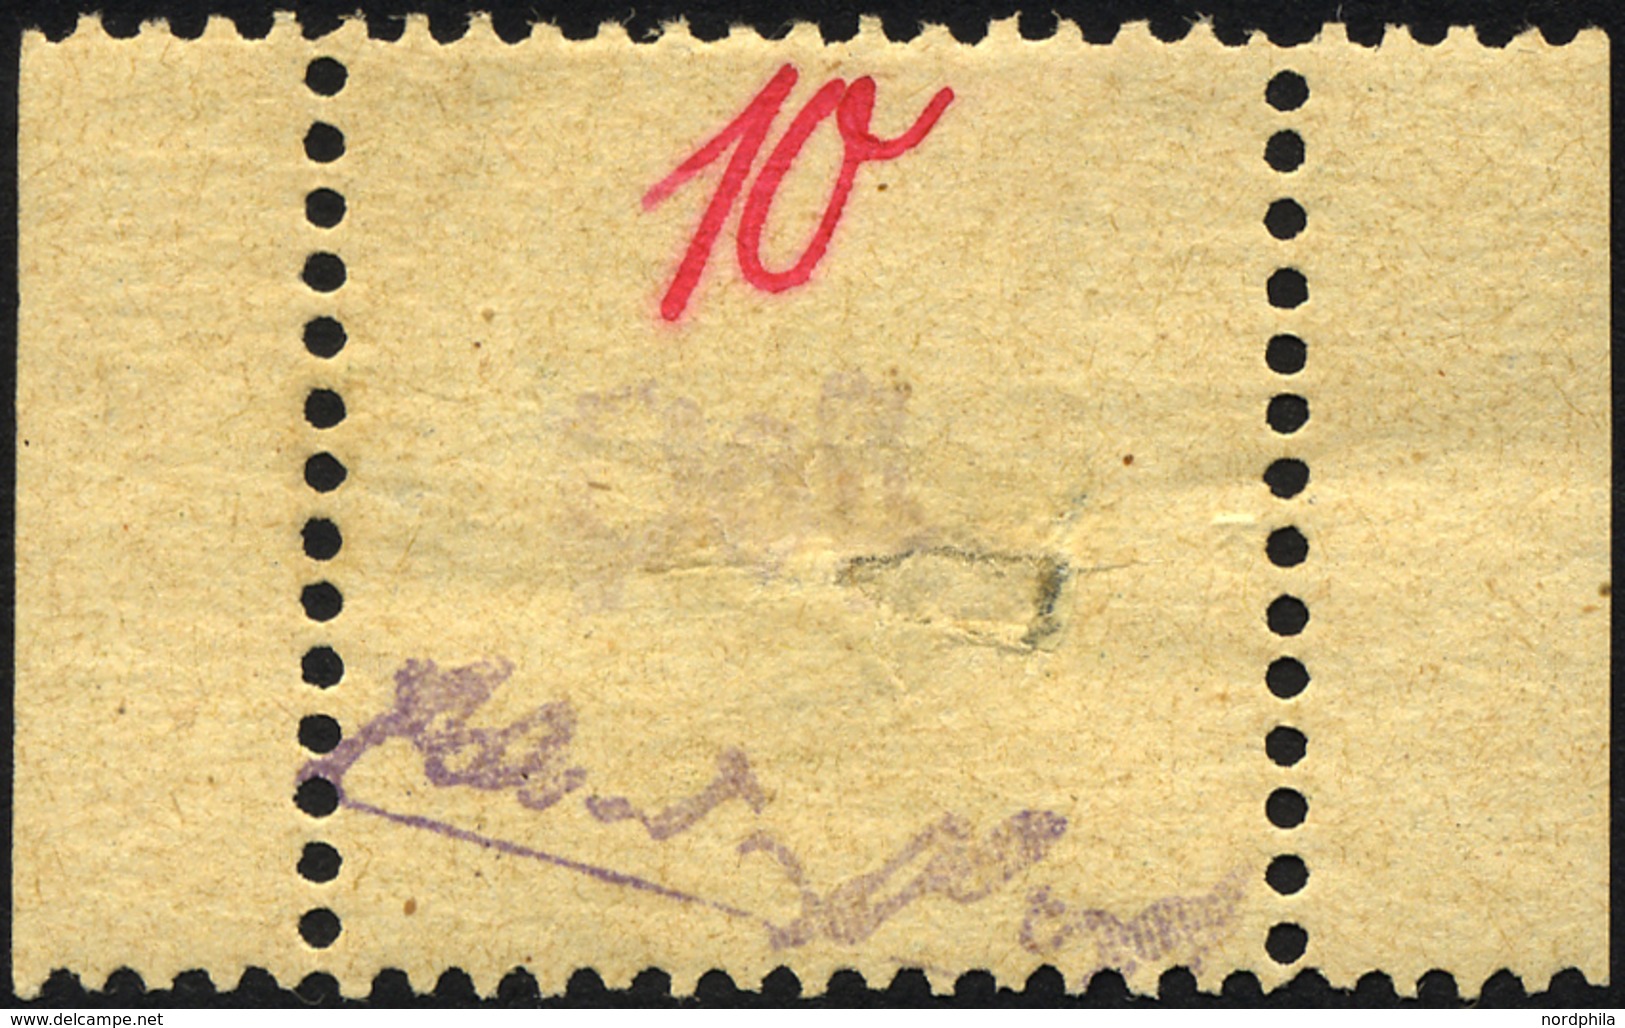 GROSSRÄSCHEN 6S *, 1945, 10 Pf. Gebührenmarke Aus Streifen, Falzreste, Große Fehlstelle In Der Markenmitte, Gepr. Kunz,  - Private & Local Mails